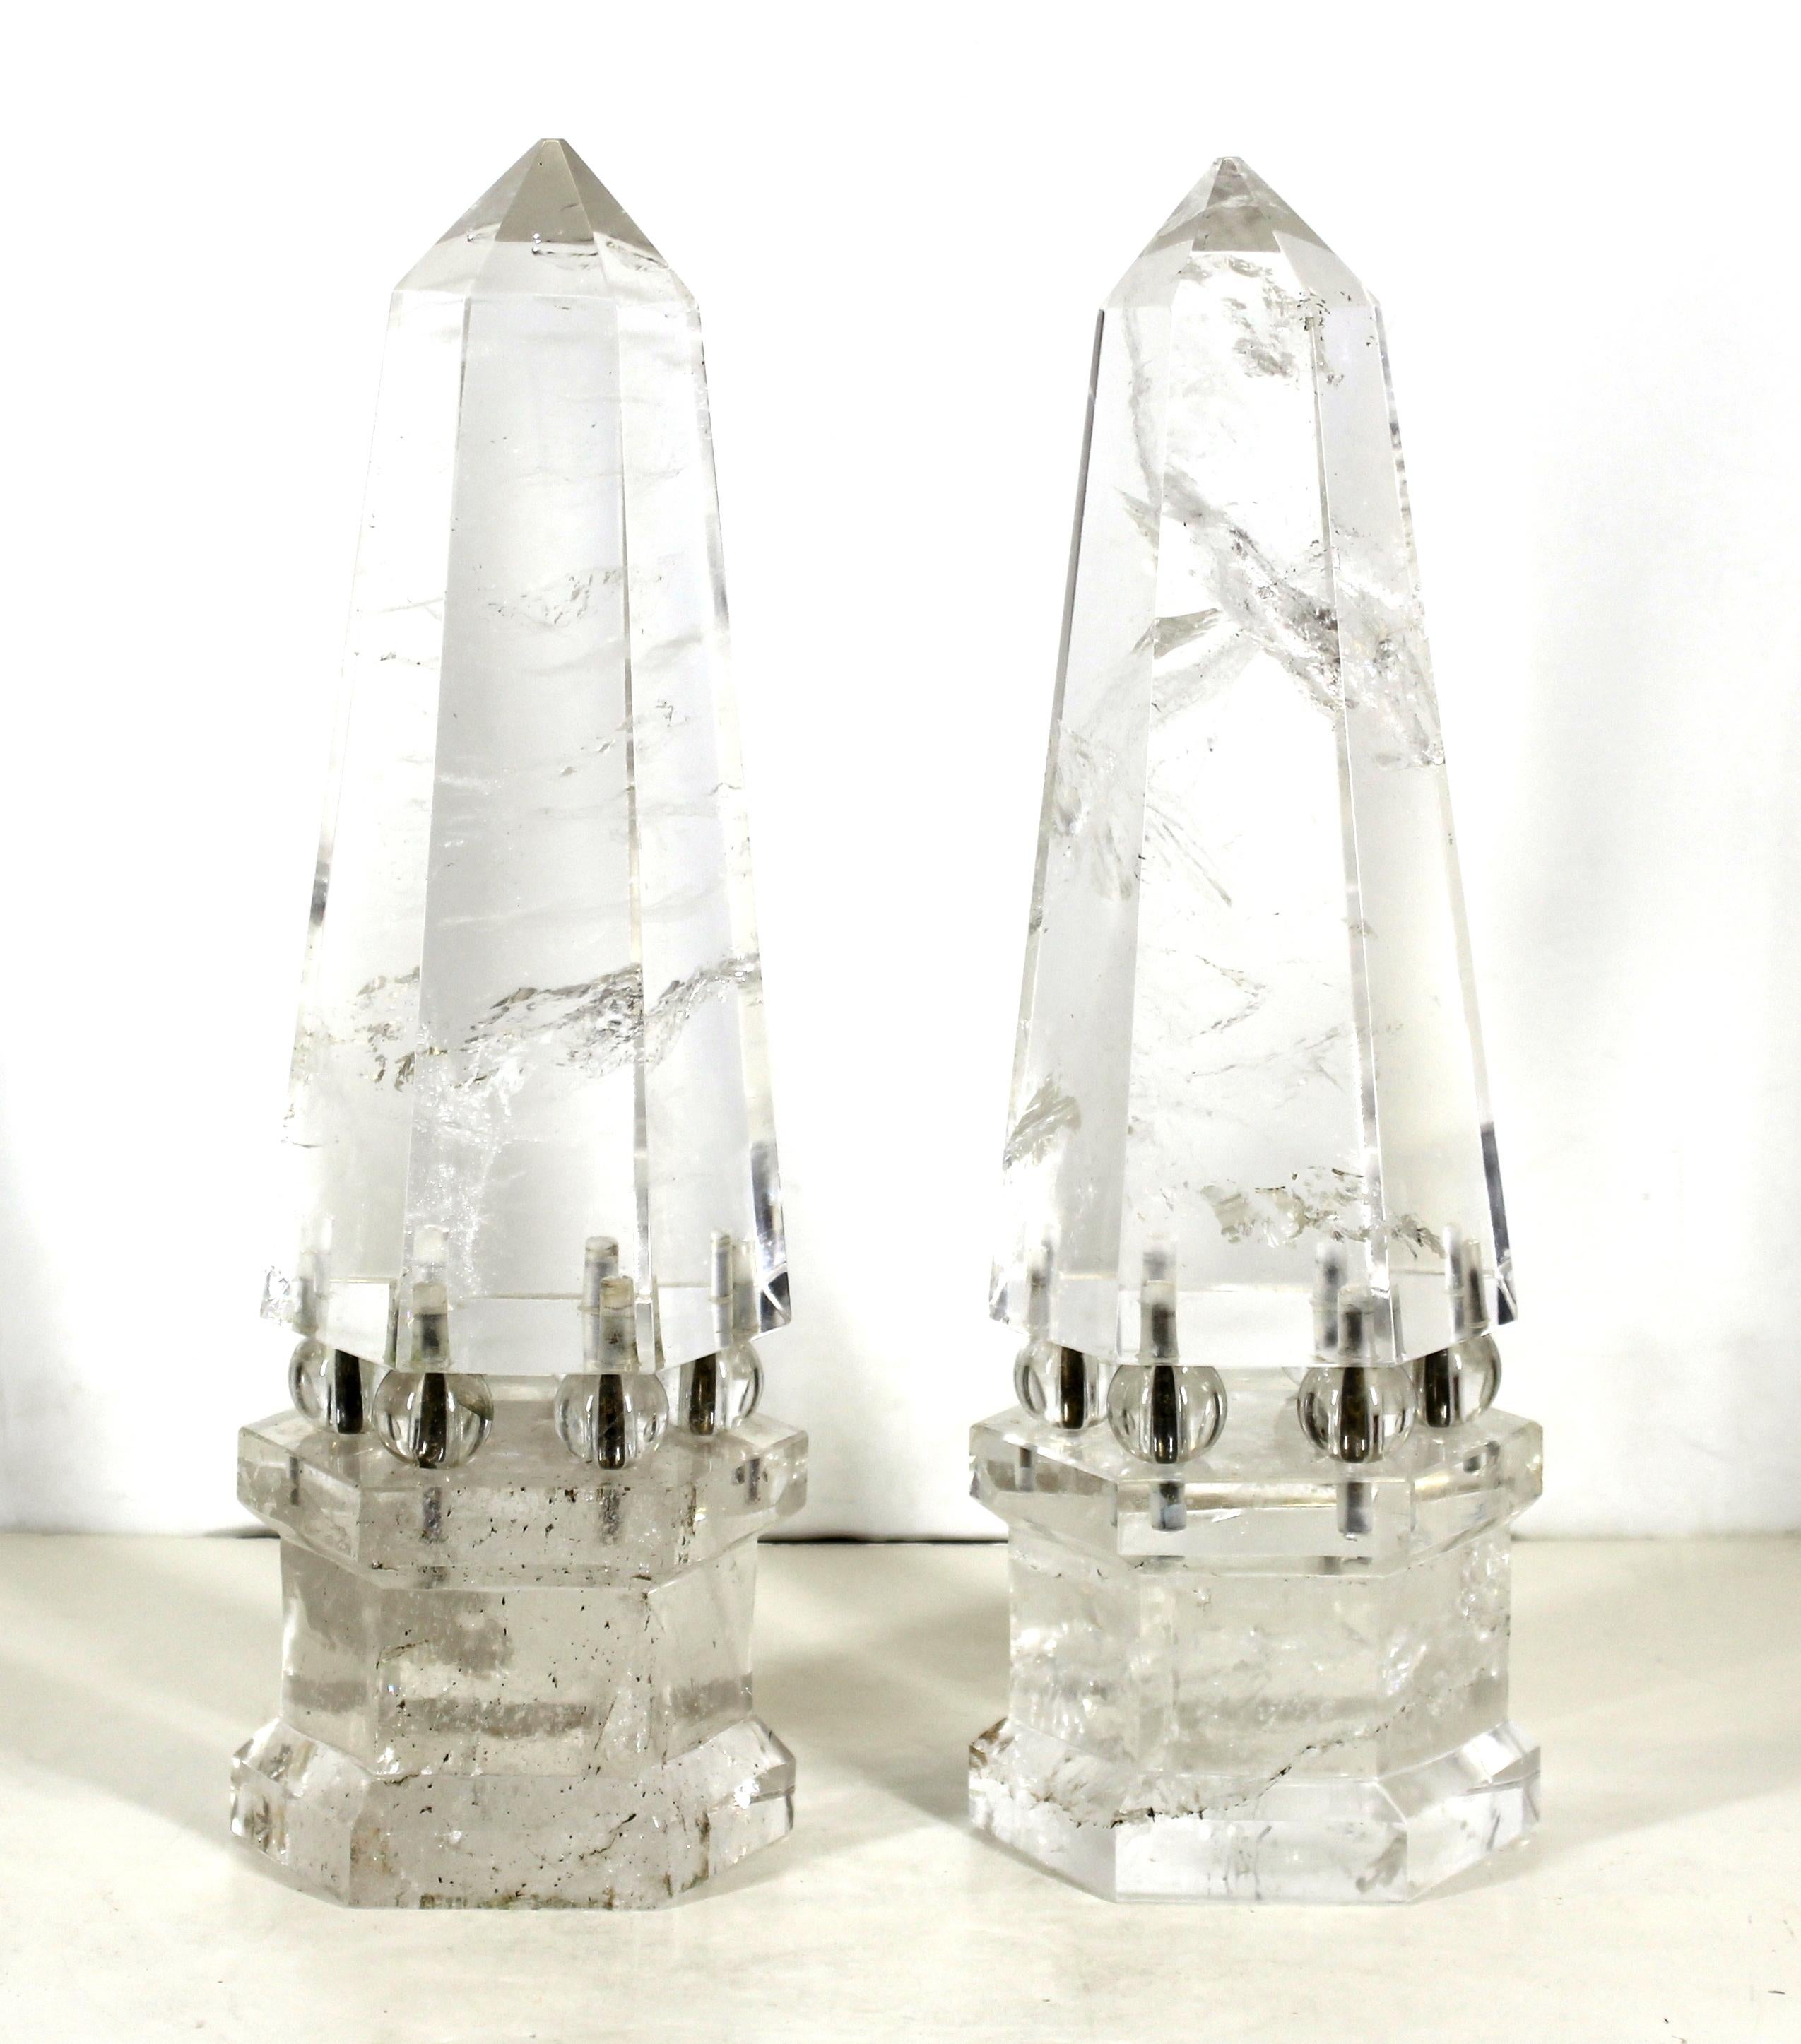 Kontinentales, neoklassizistisches Bergkristall-Obeliskenpaar in sechseckiger Form, jeweils auf sechs Bronzestäben montiert, die Bergkristallkugeln halten und mit dem sechseckigen Bergkristallsockel verbunden sind. Das Paar wurde Anfang des 20.